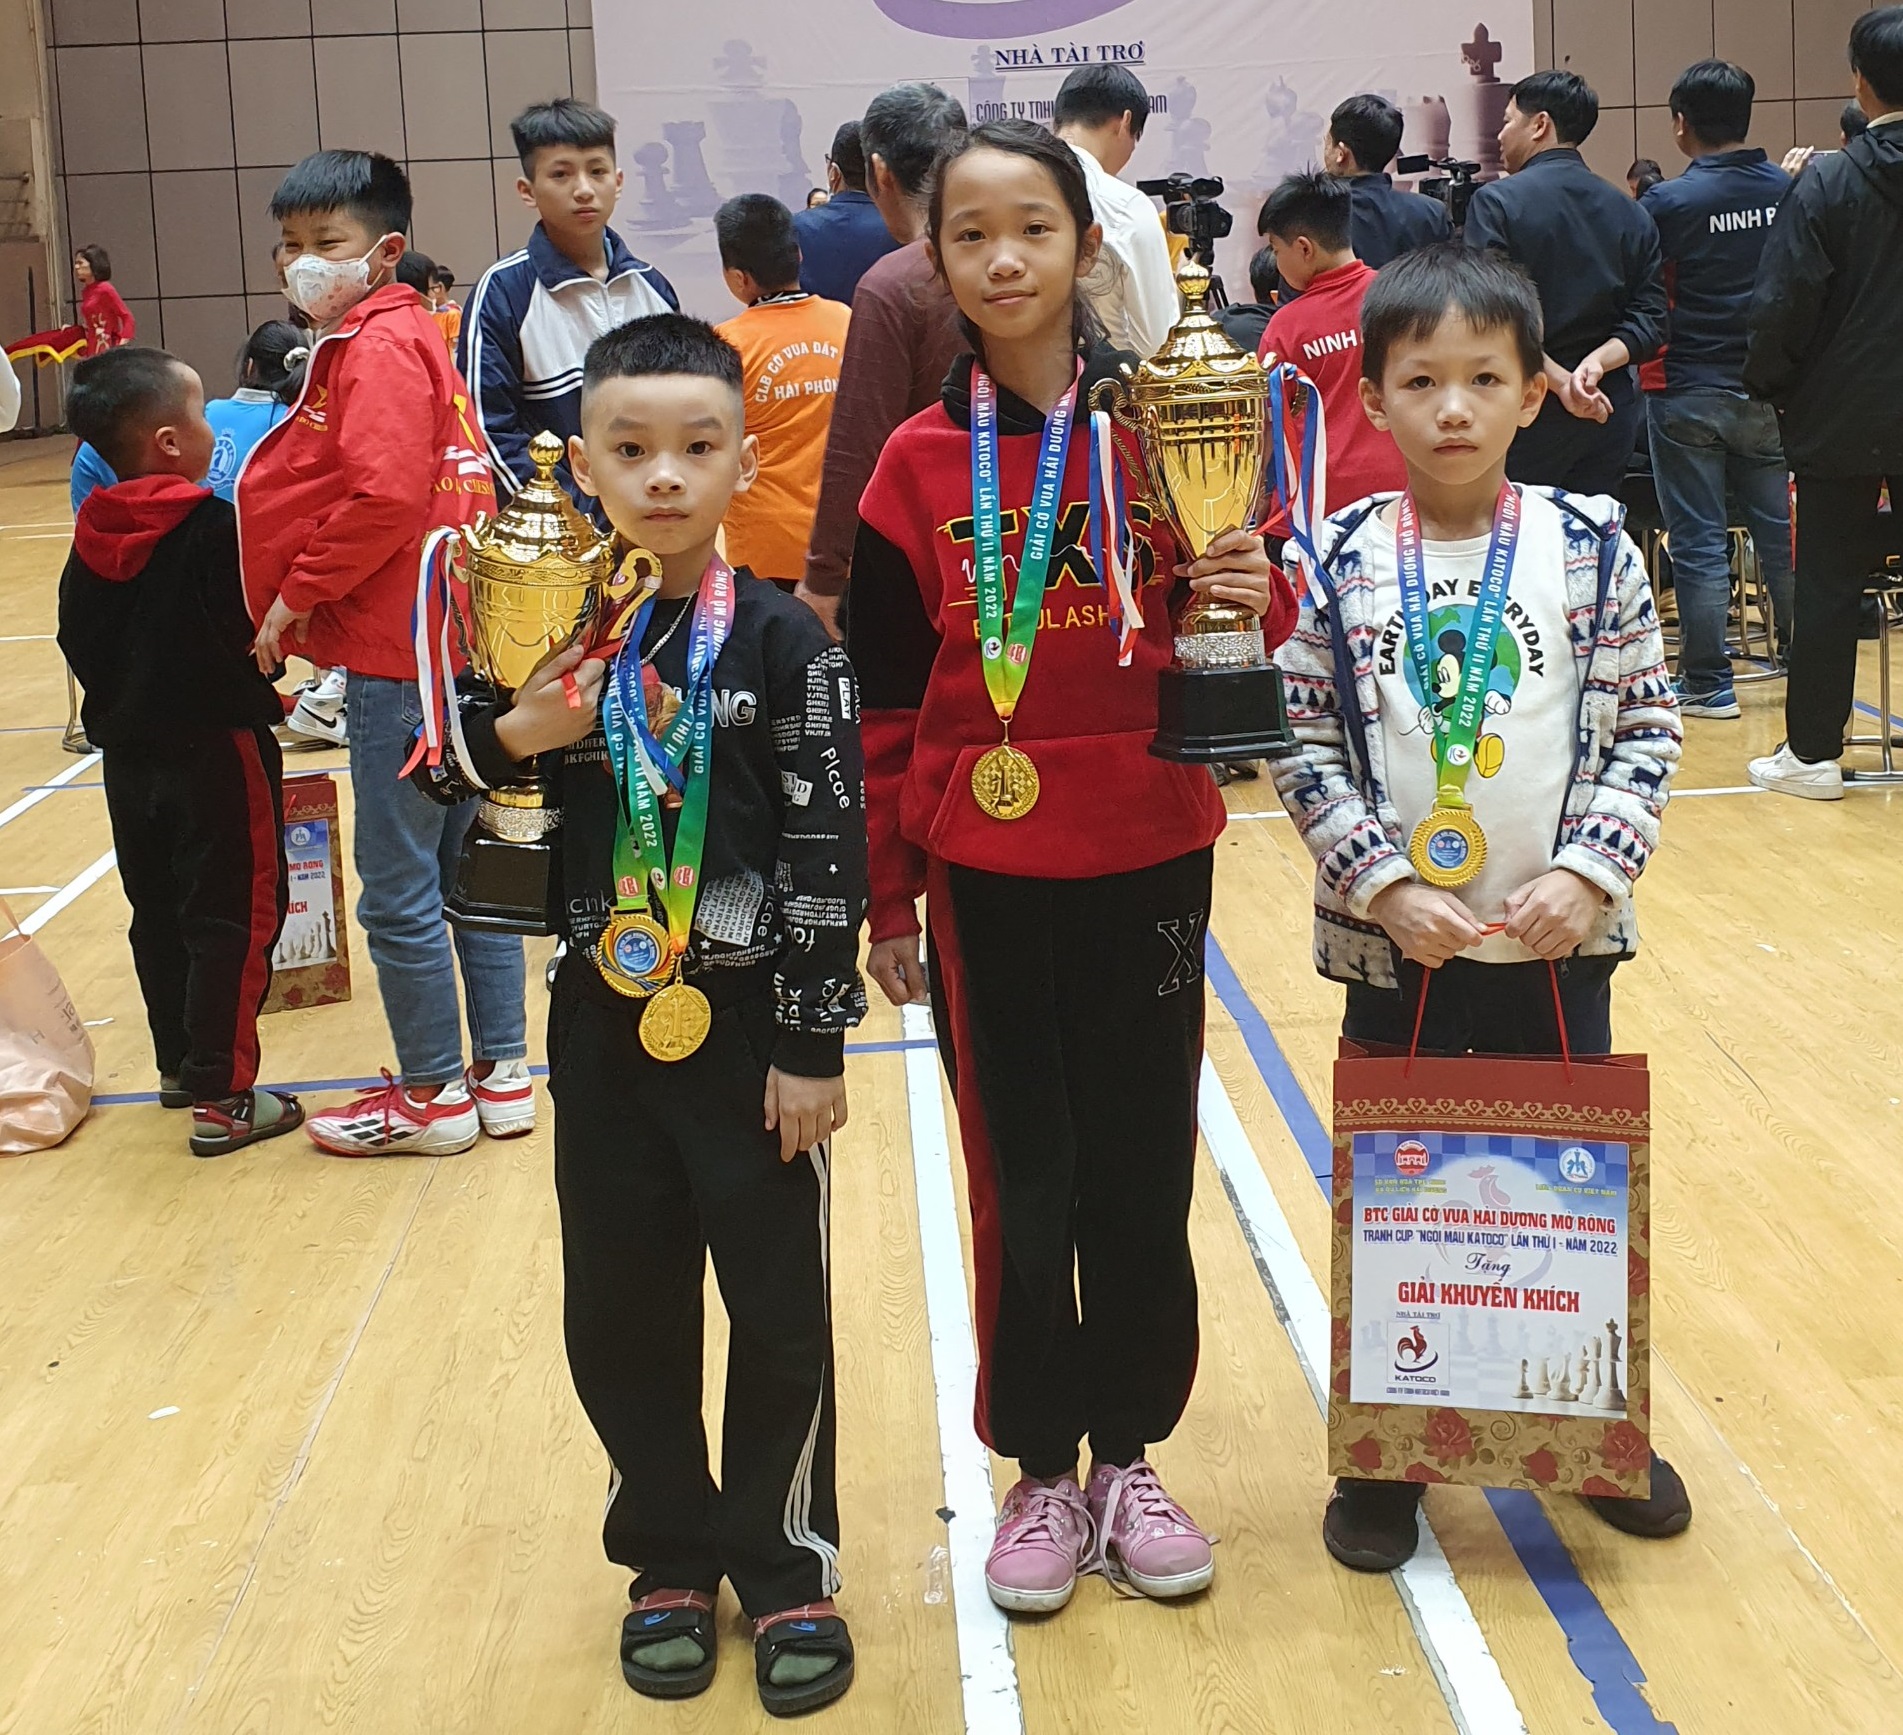 3 kỳ thủ nhí của Quảng Ninh đoạt huy chương vàng.